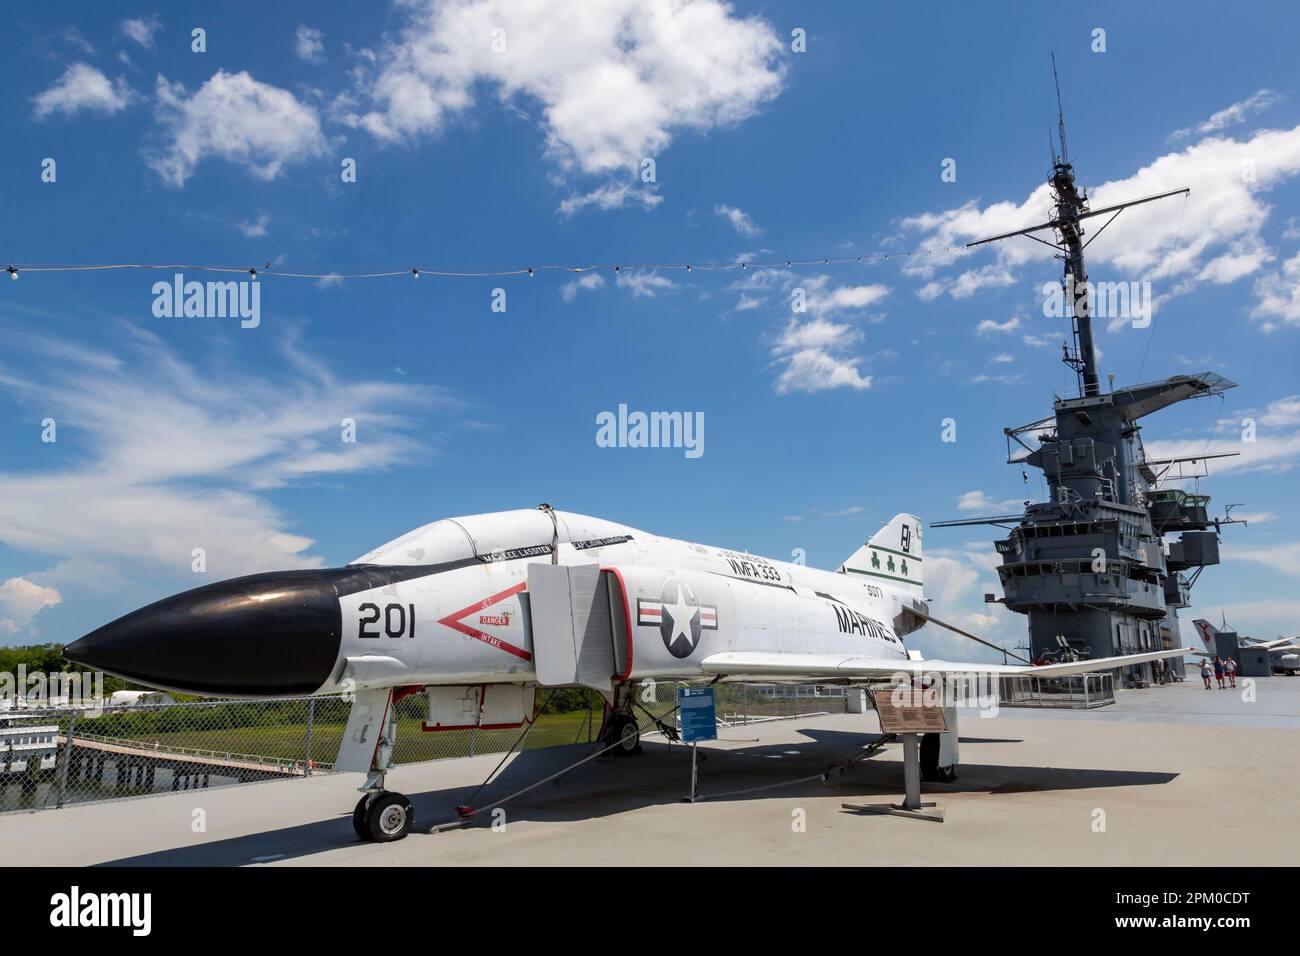 A United States Marine Corp. F-4 avion de chasse fantôme exposé à  l'électricité statique à bord de l'USS Yorktown au Musée naval et maritime  de Patriot point, SC, États-Unis Photo Stock 